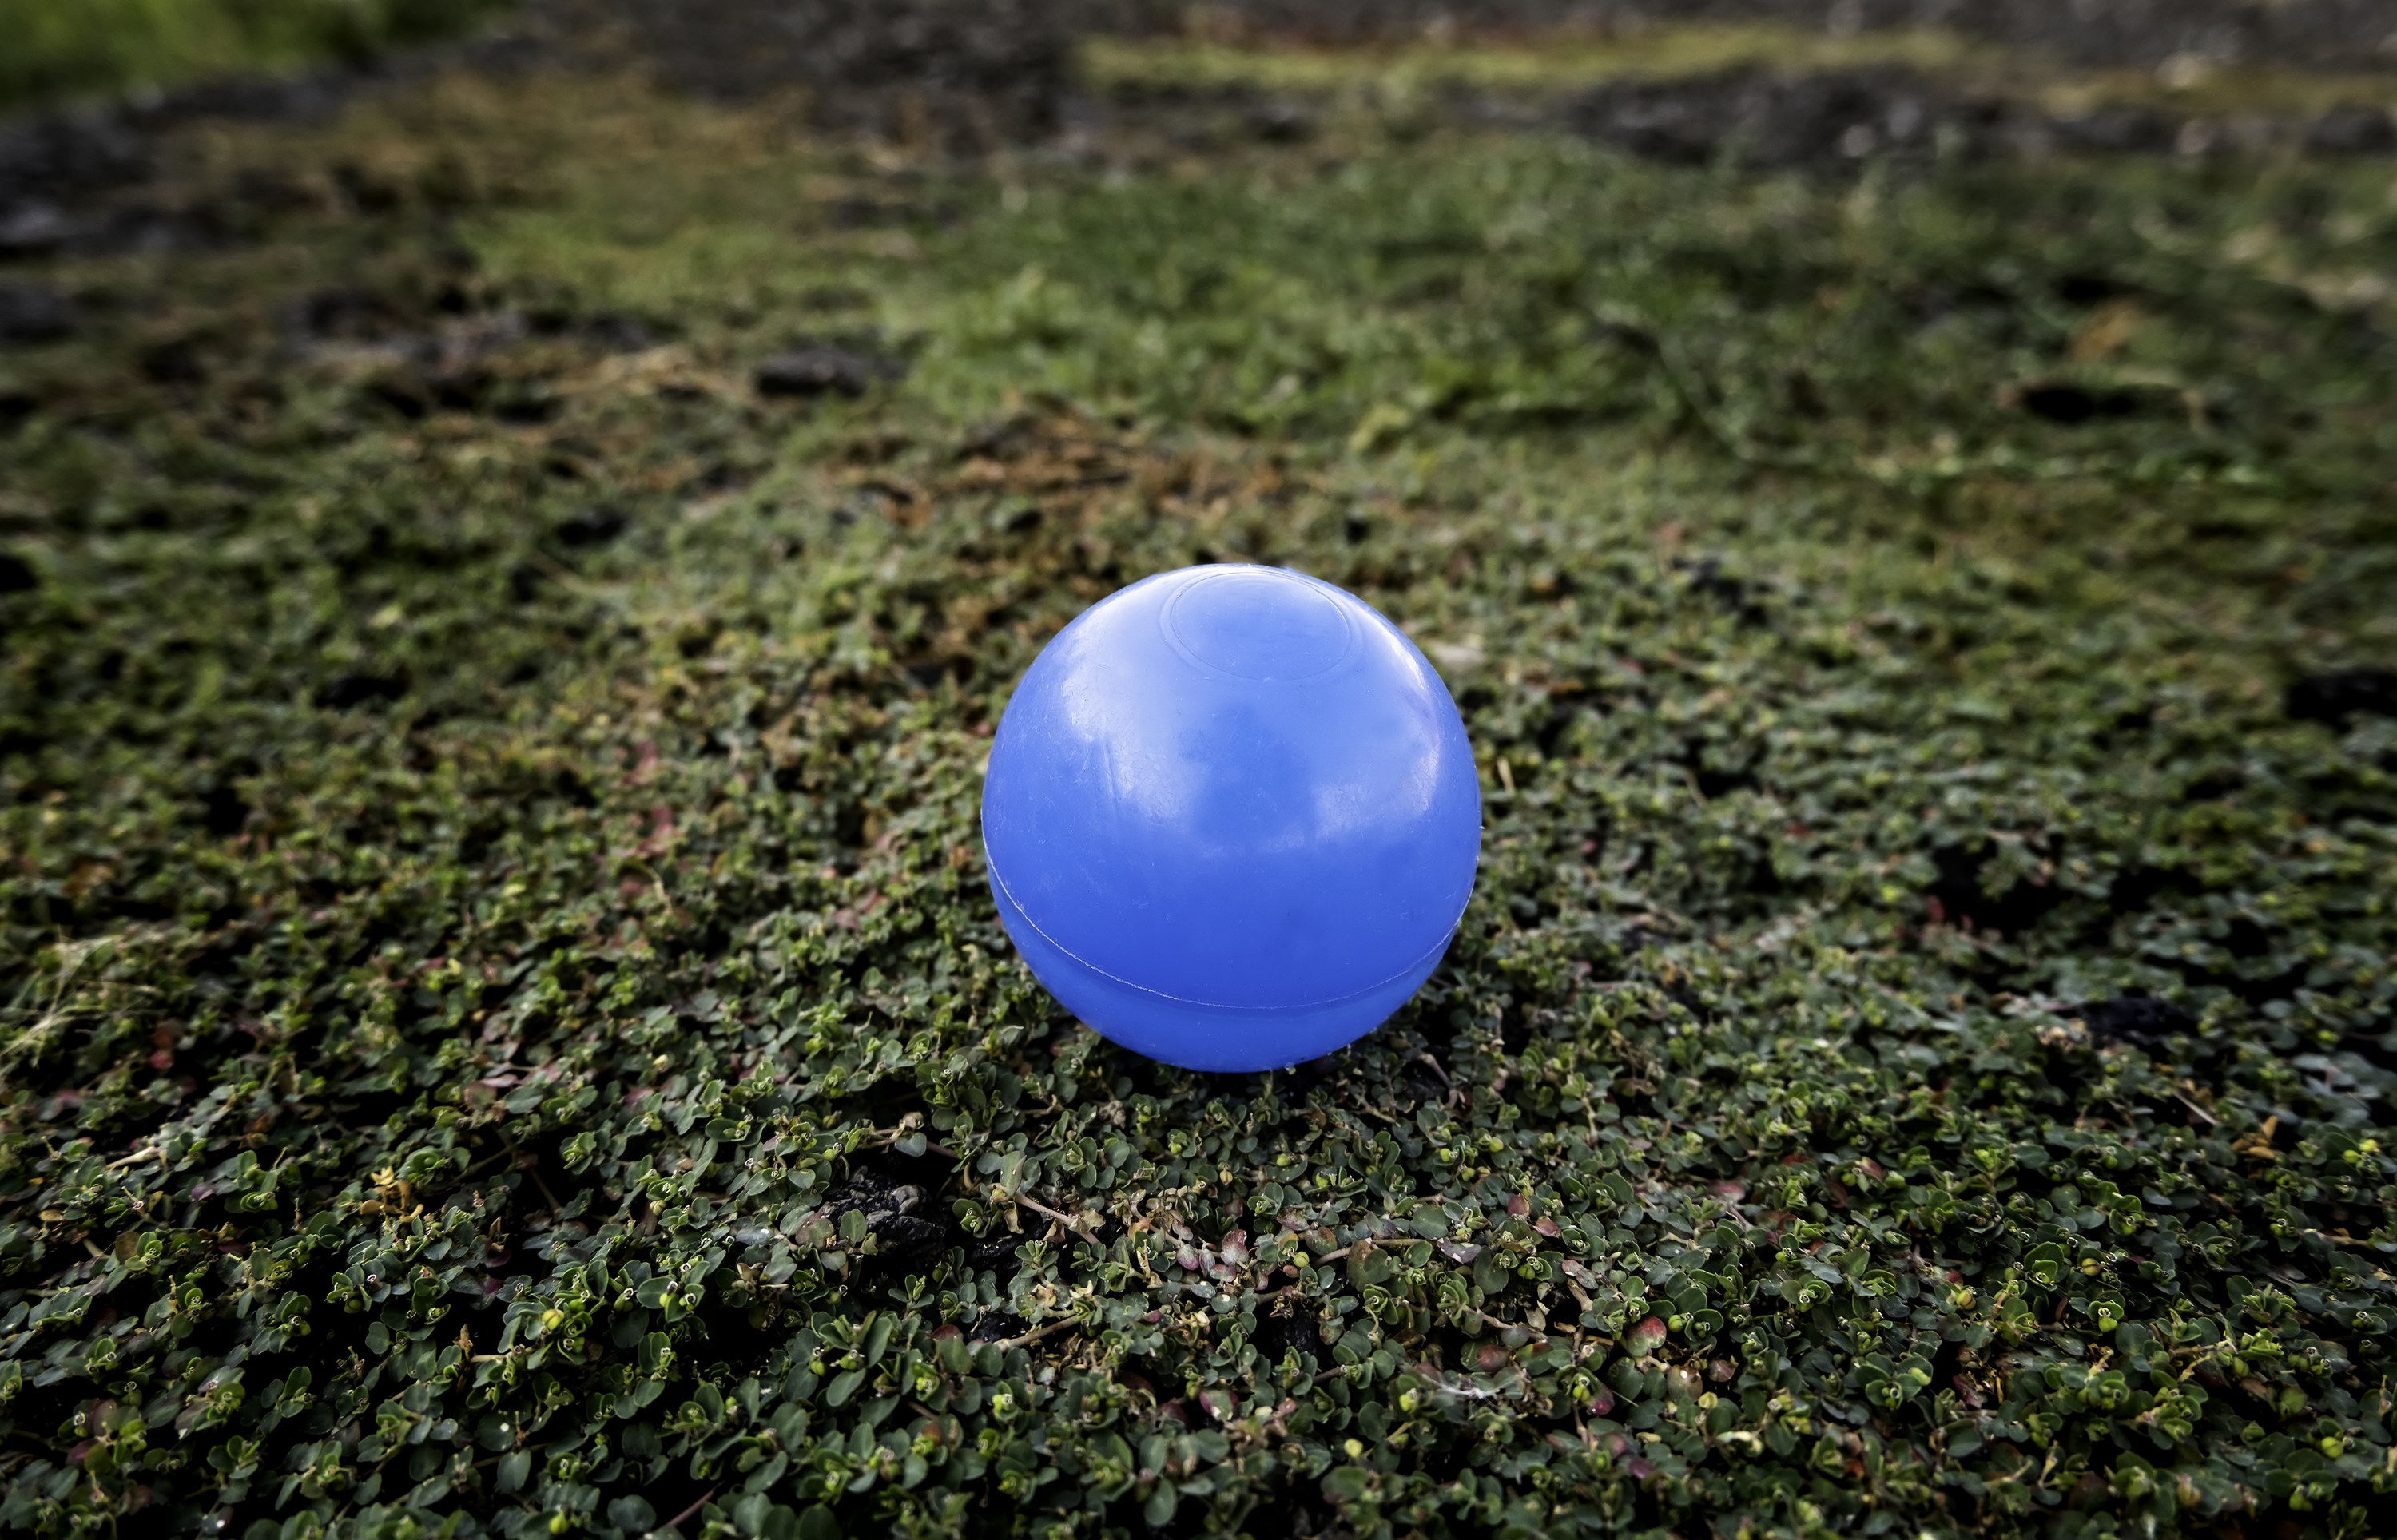 a blue foam ball on grass outside